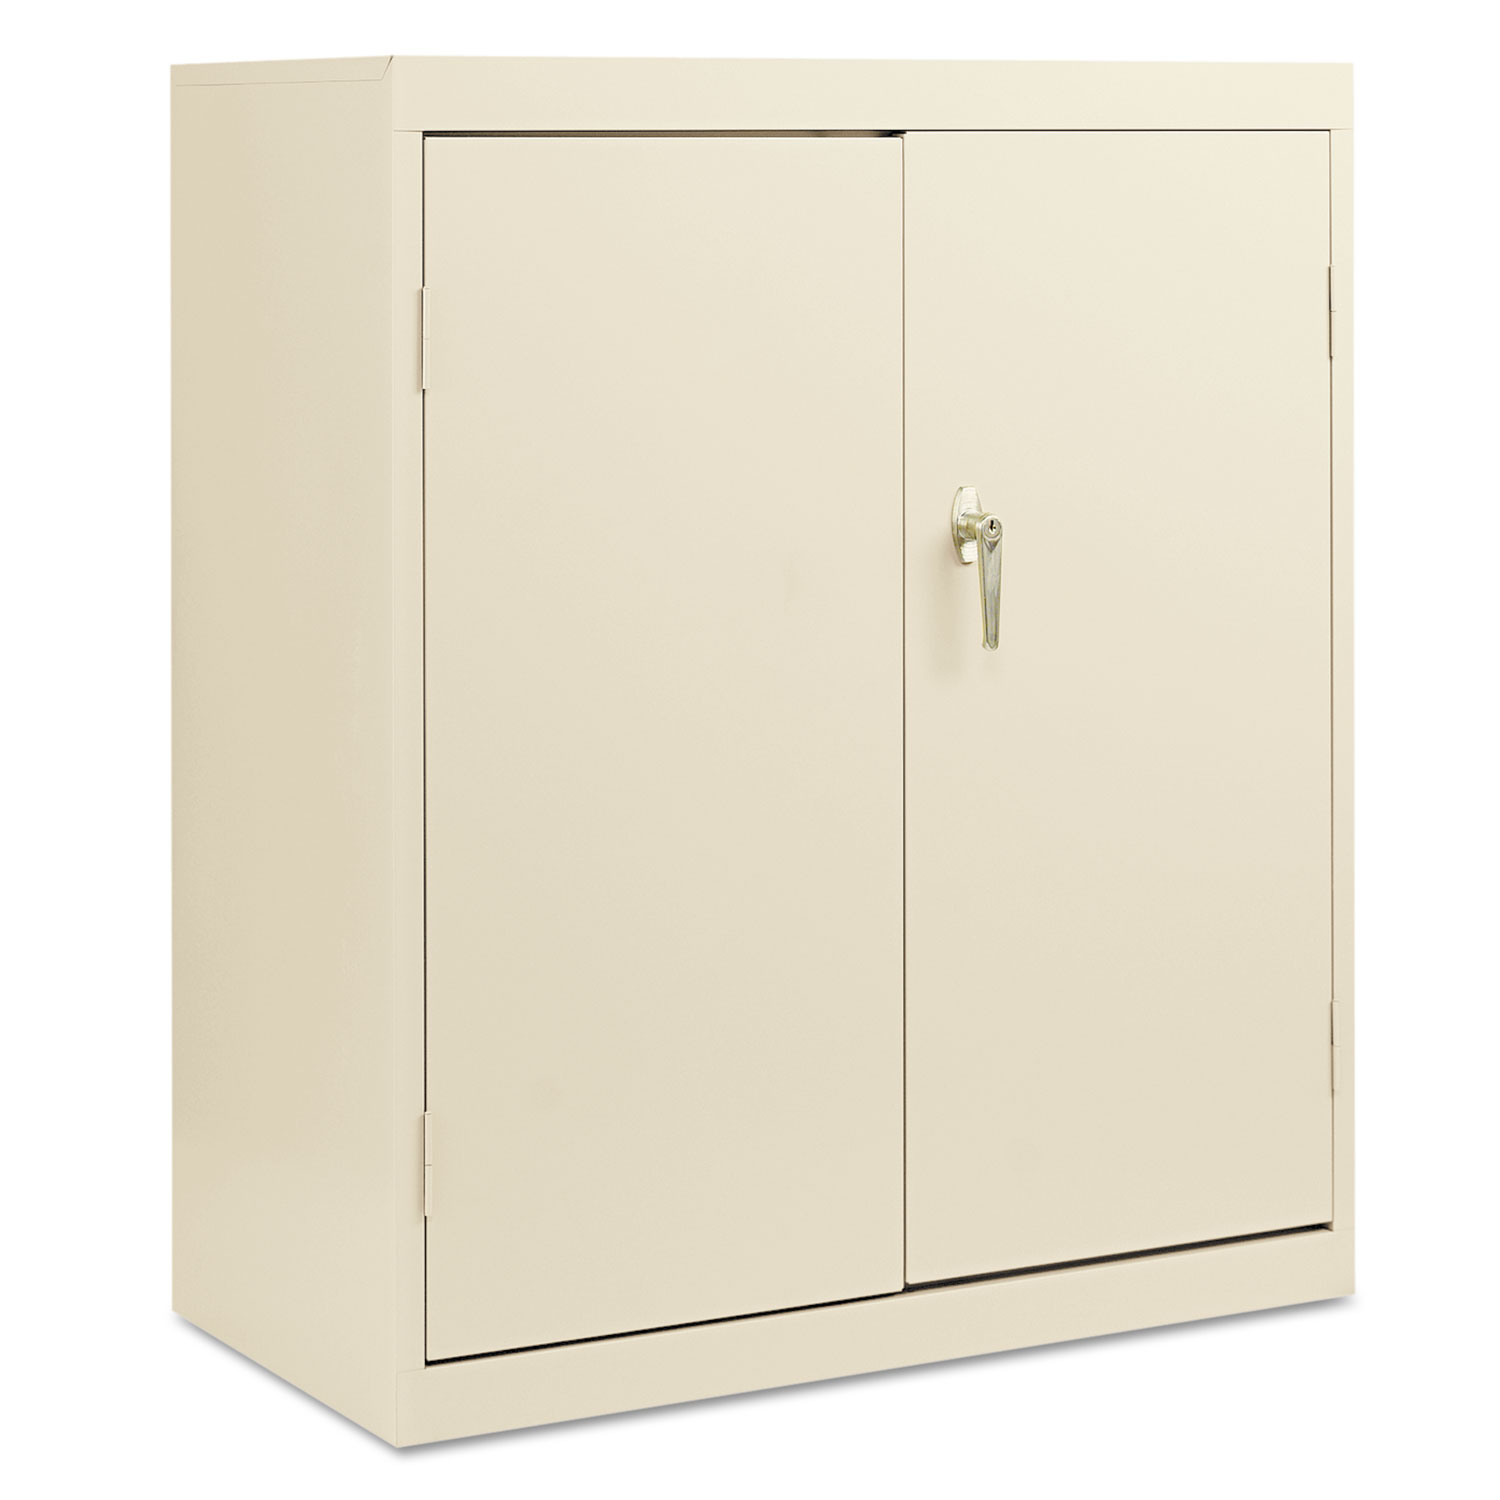  Alera ALECME4218PY Economy Assembled Storage Cabinet, 36w x 18d x 42h, Putty (ALECME4218PY) 